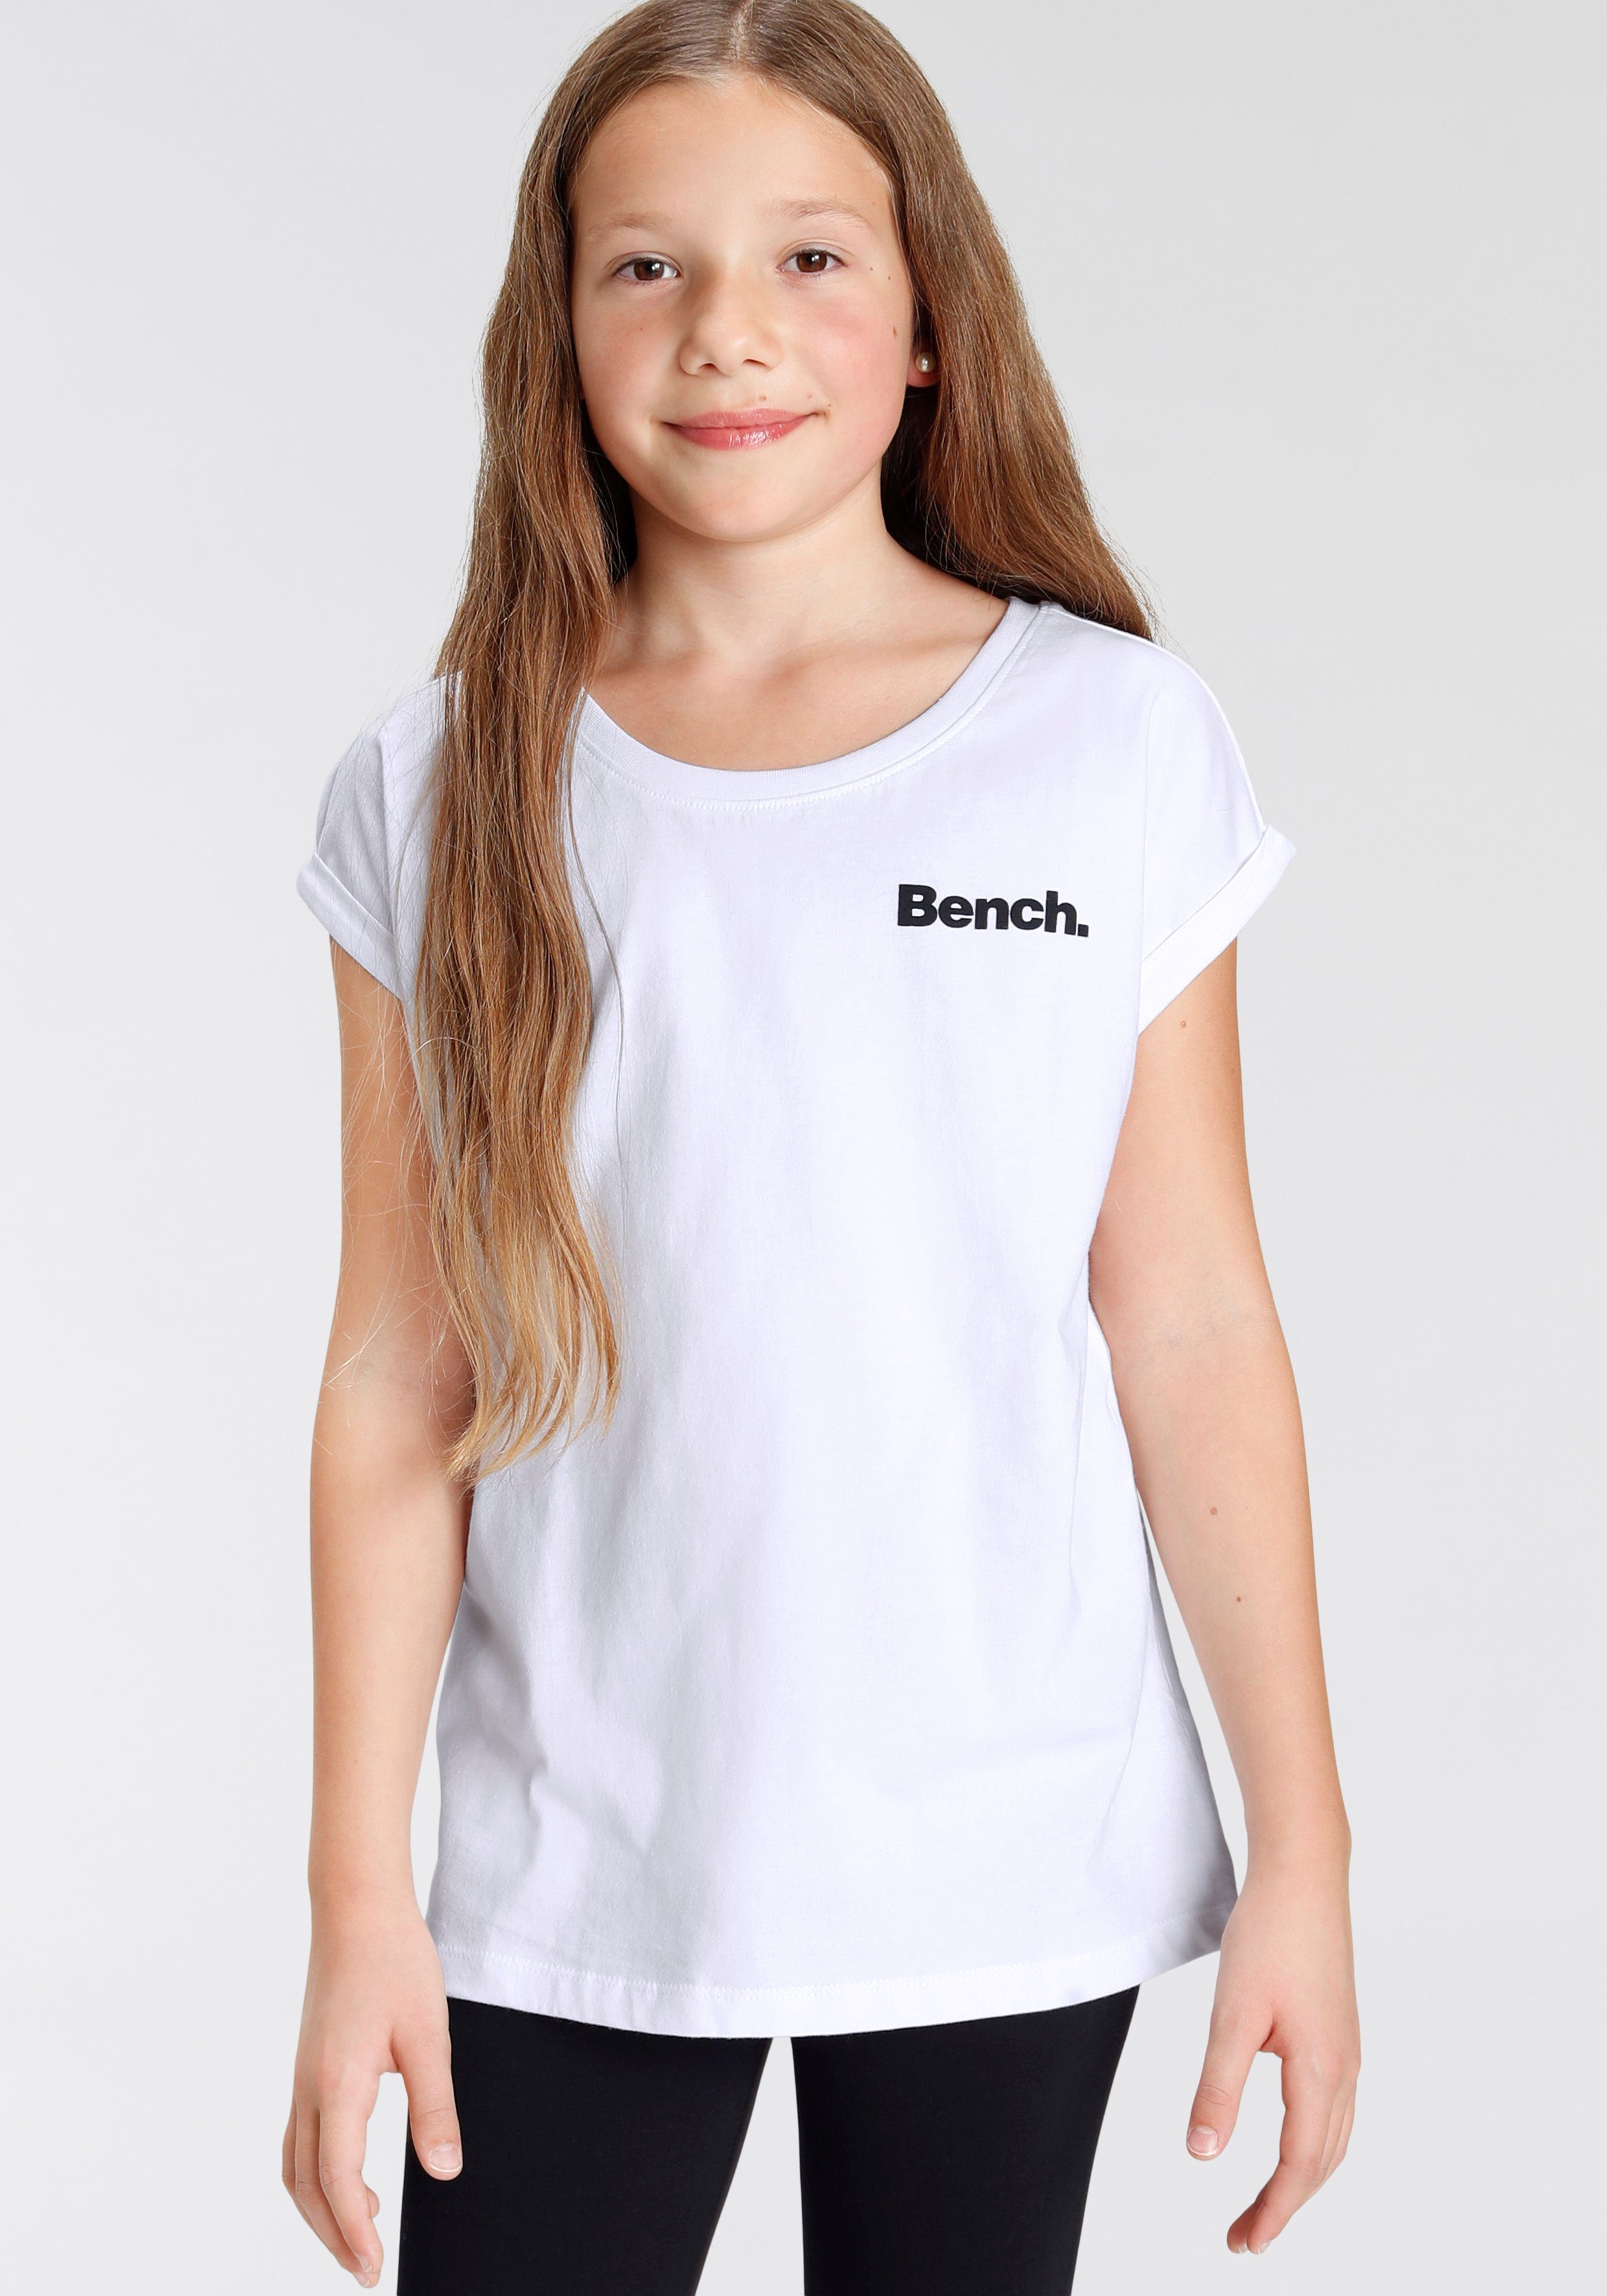 Bench. T-Shirt Fotodruck mit